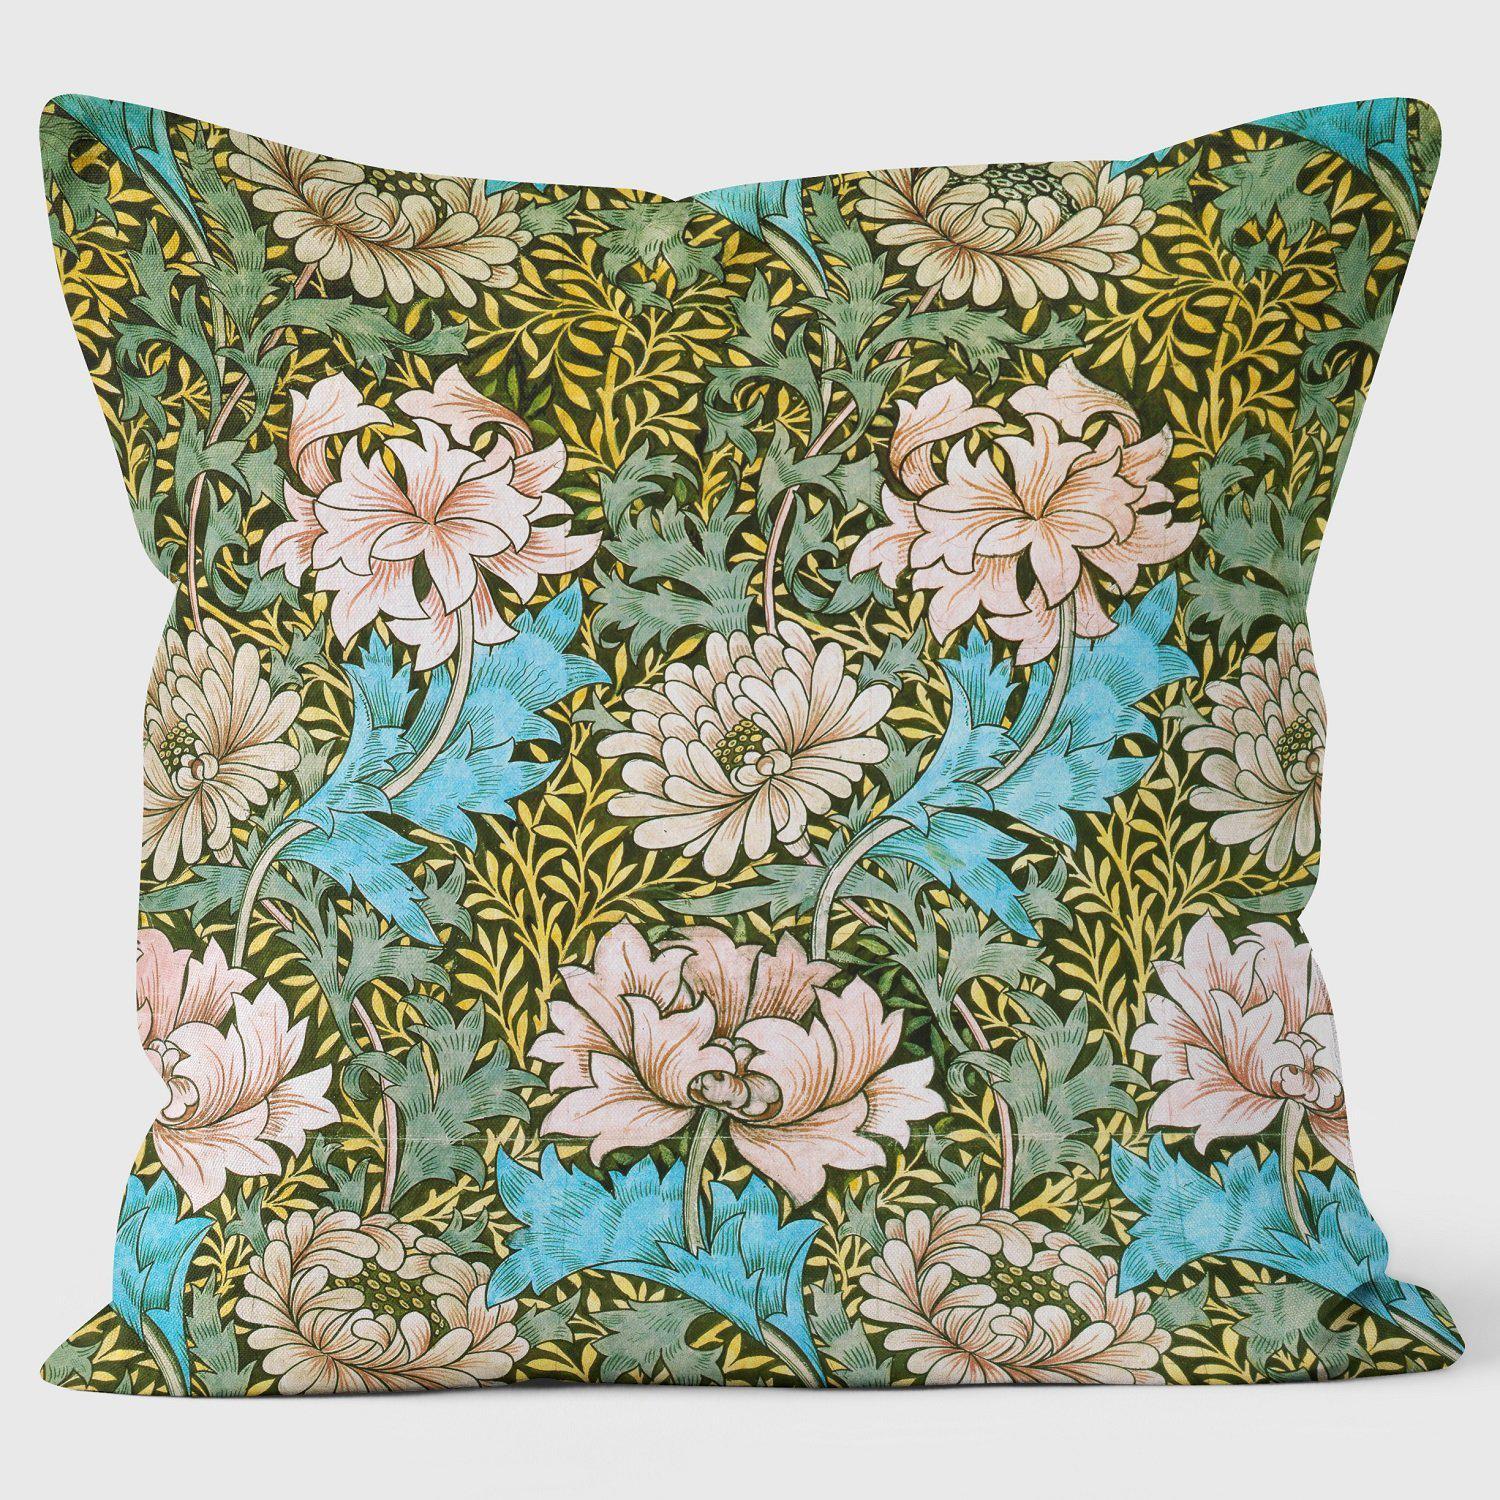 Chrysanthemum - William Morris Cushion - Handmade Cushions UK - WeLoveCushions